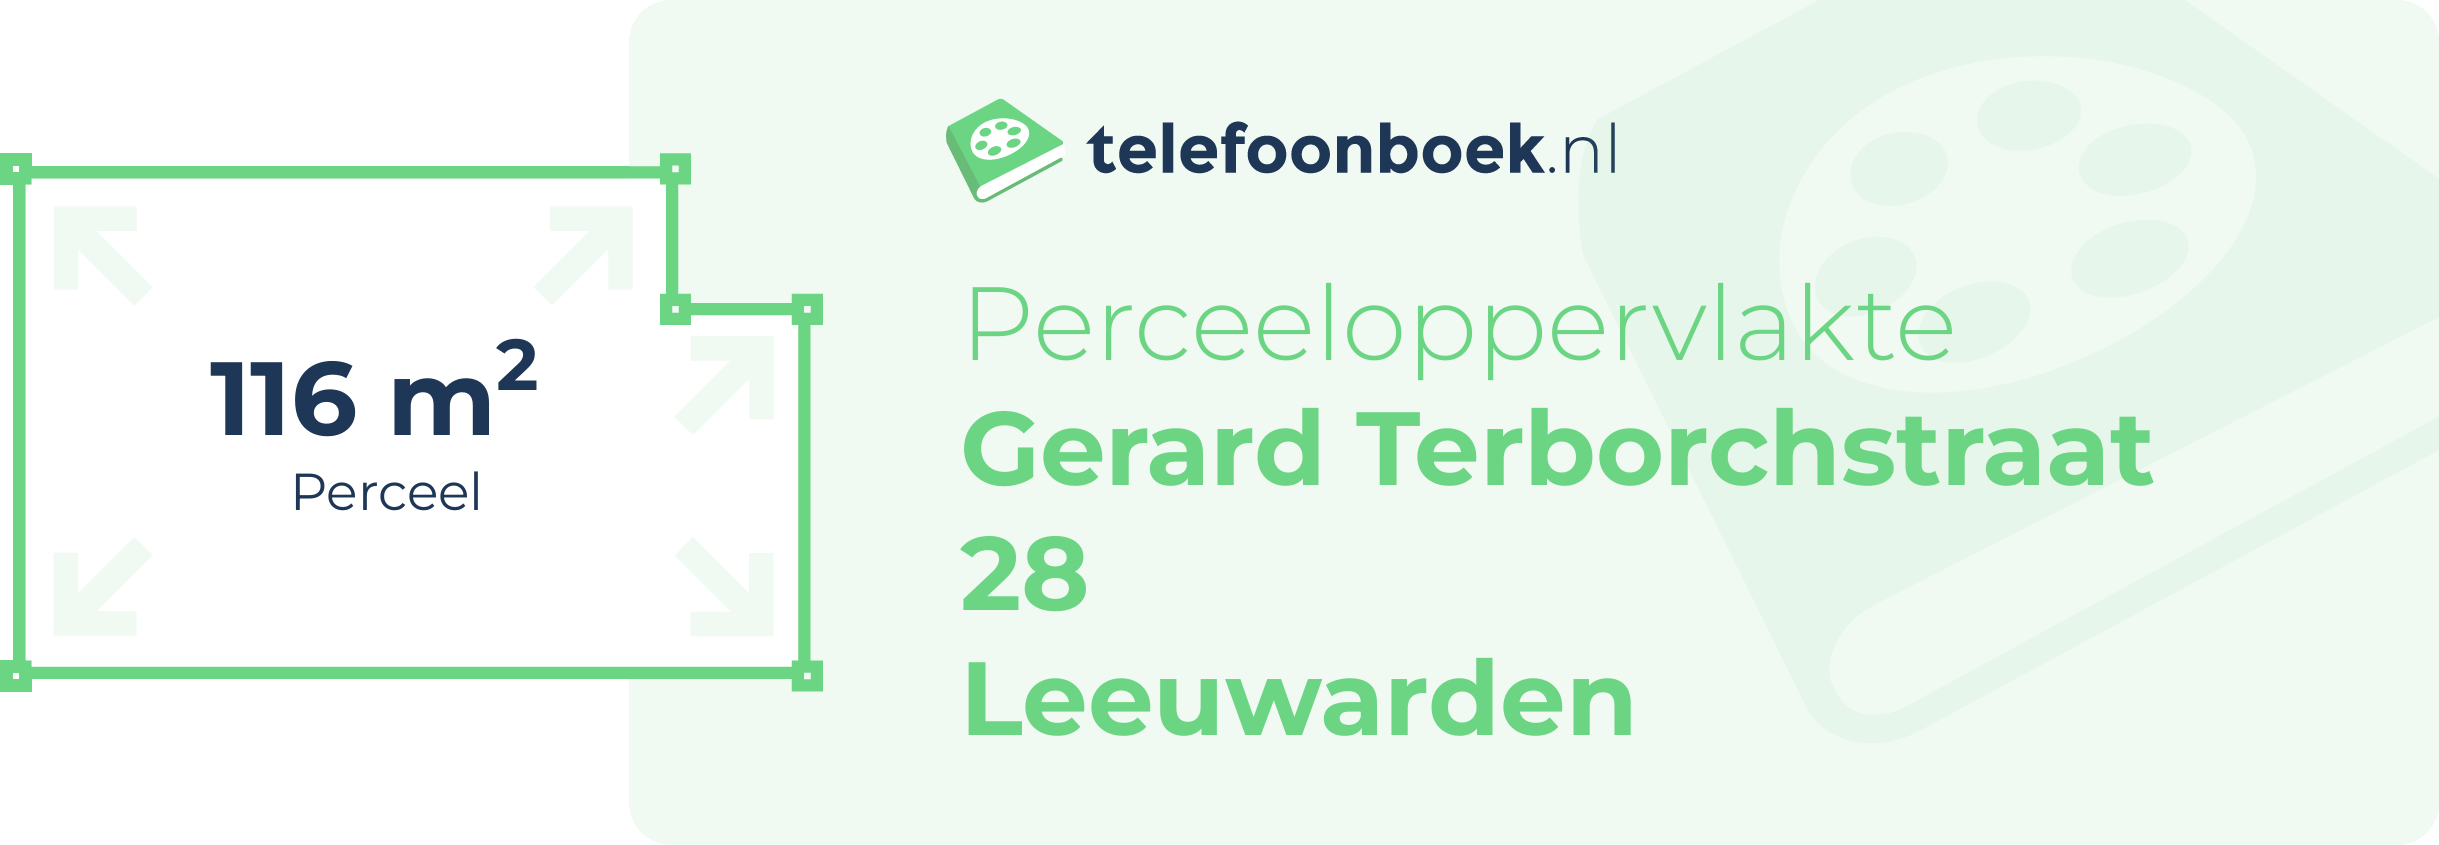 Perceeloppervlakte Gerard Terborchstraat 28 Leeuwarden